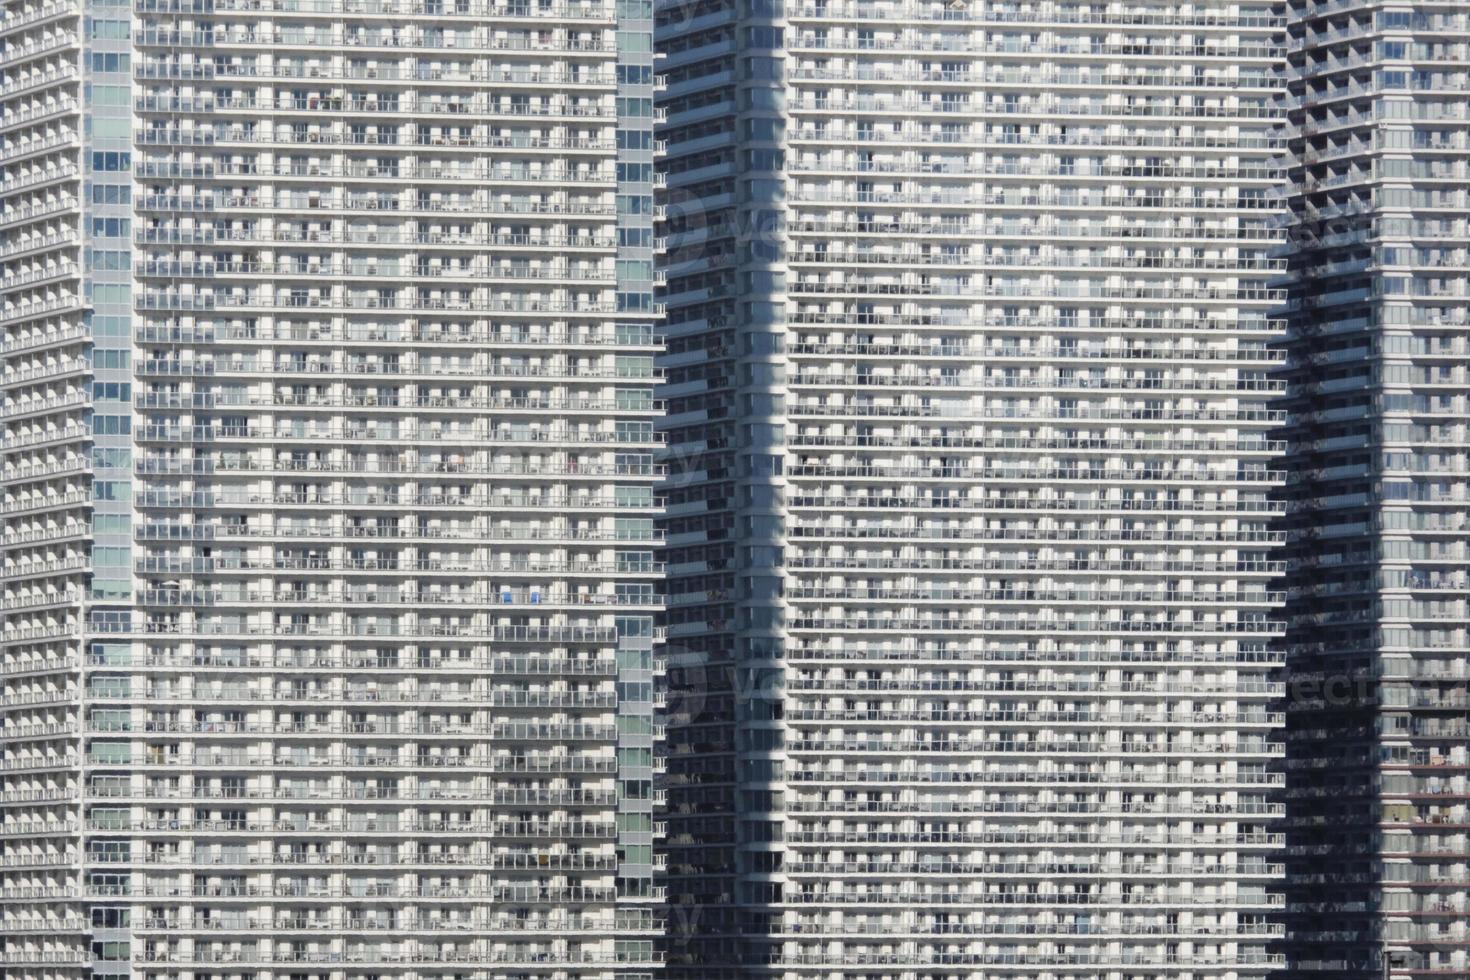 vie urbaine dense dans une rangée de gratte-ciel à tokyo, japon photo